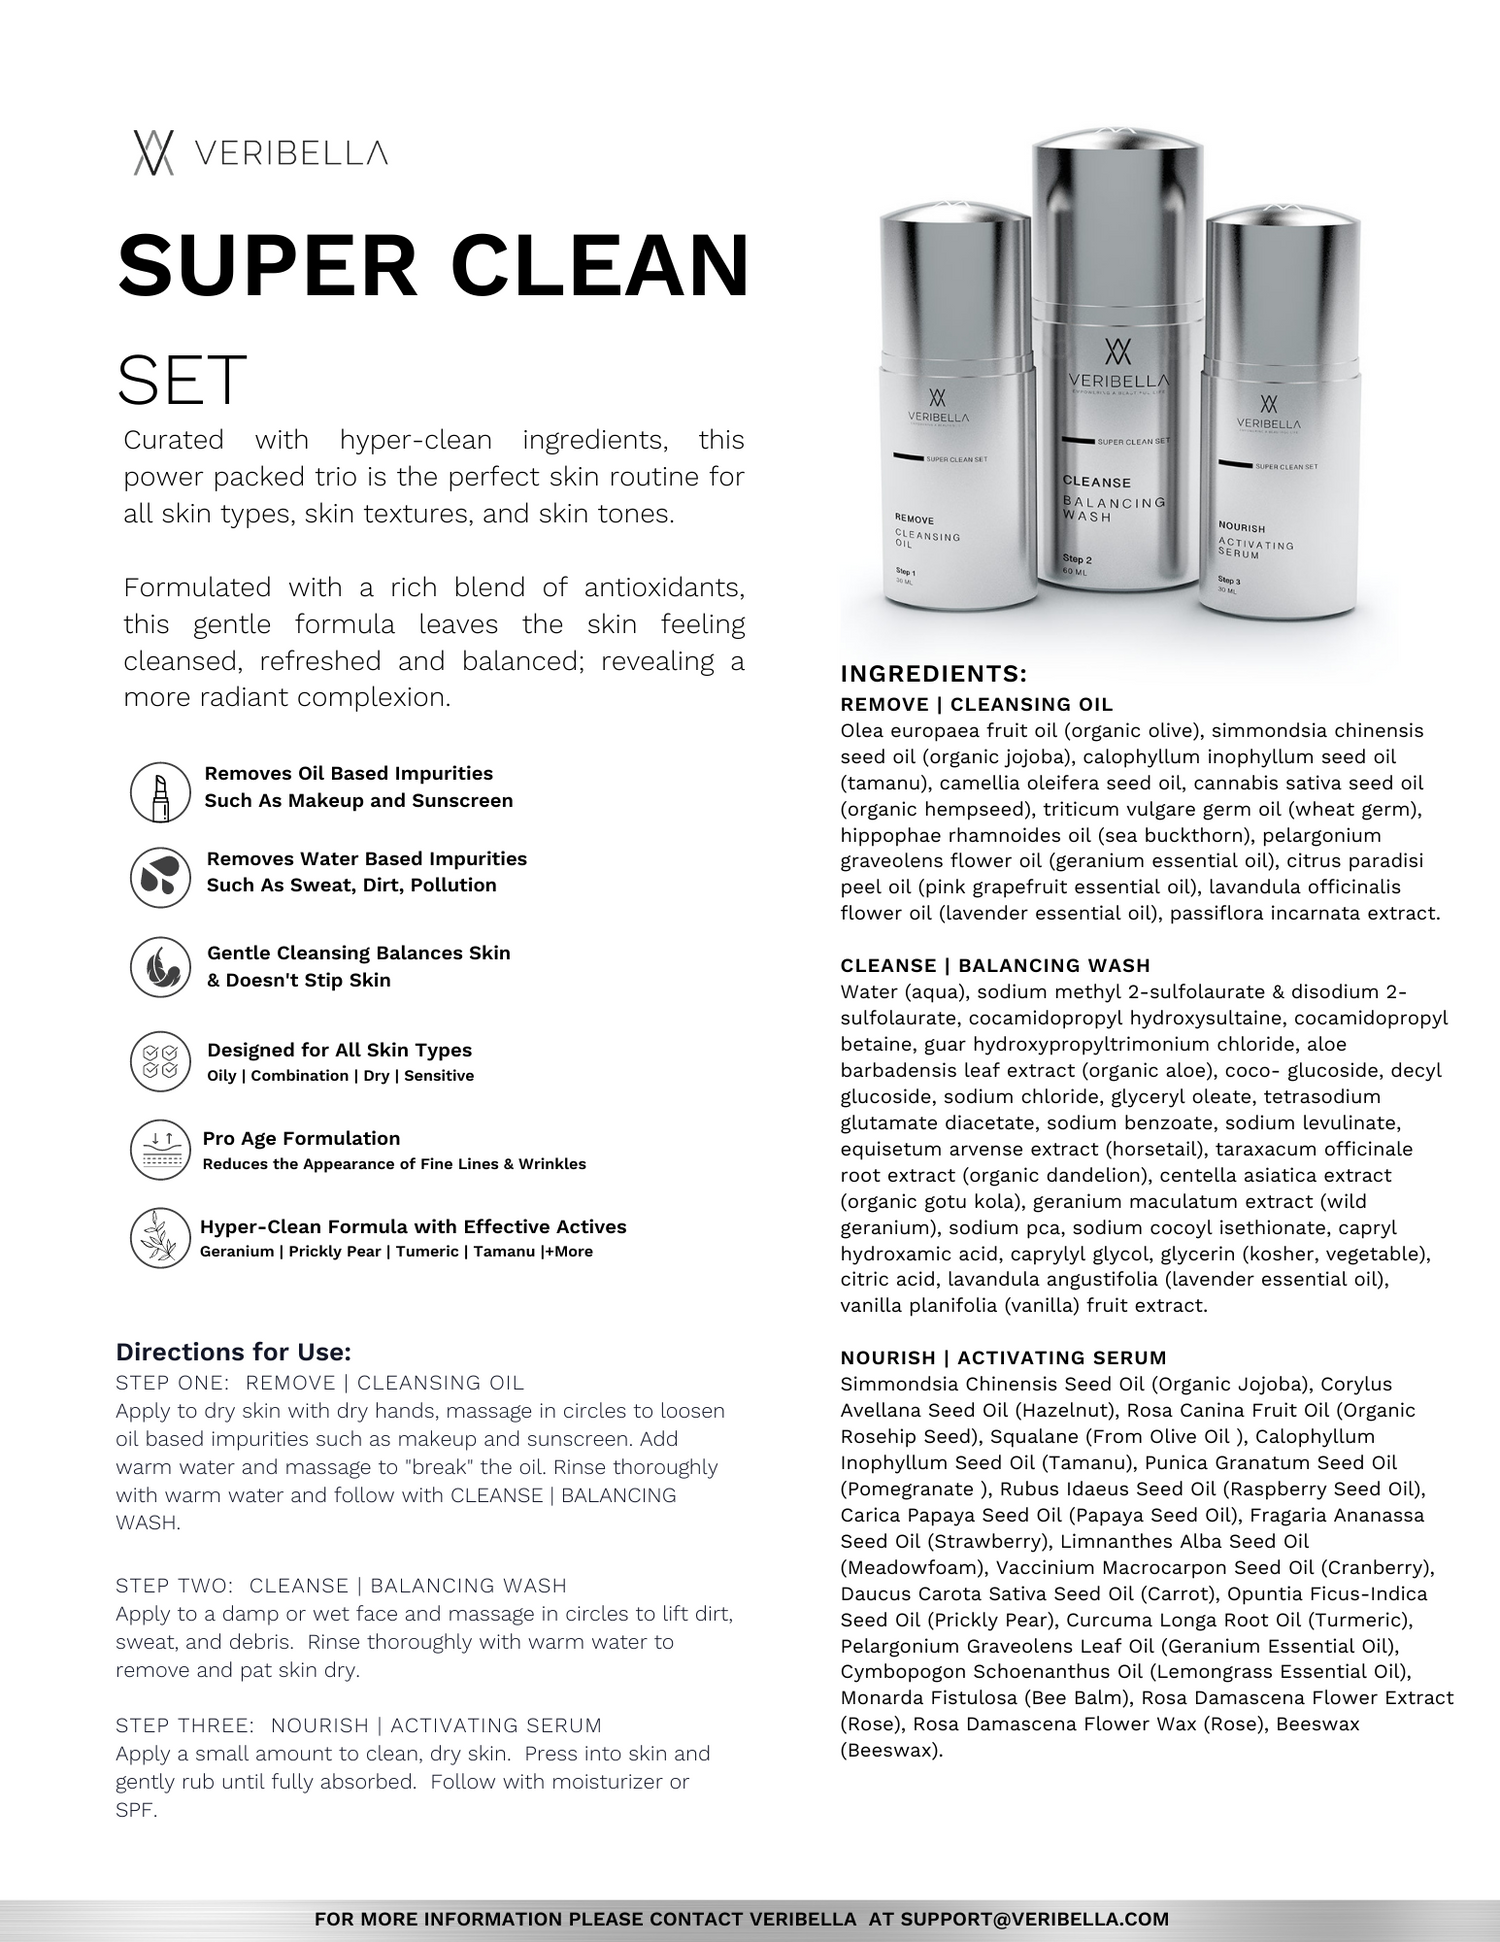 SUPER CLEAN SET Fact Sheet